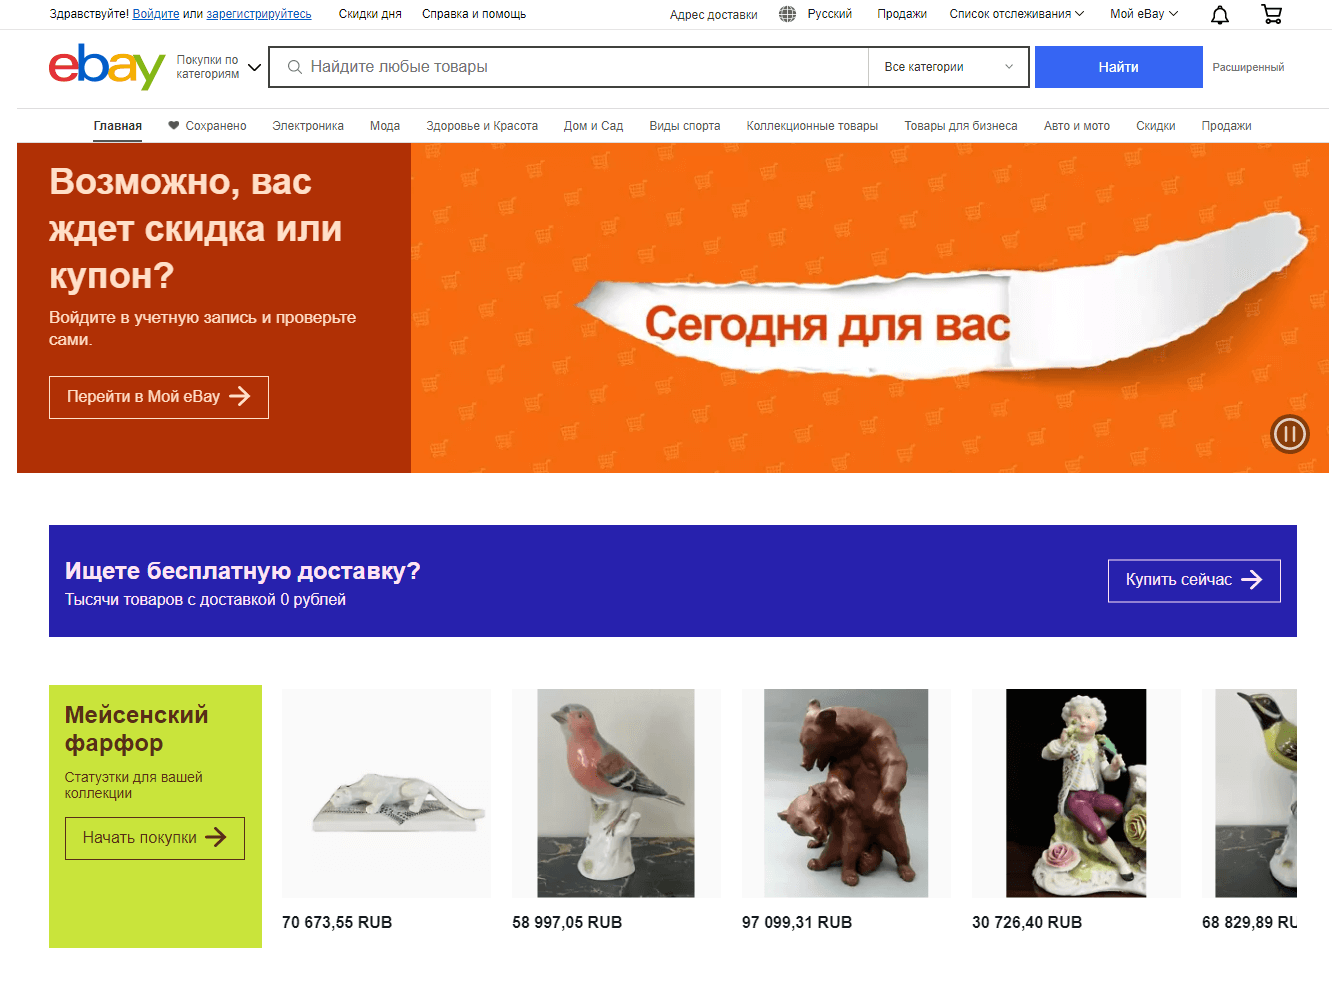 Главная страница официального сайта Ebay